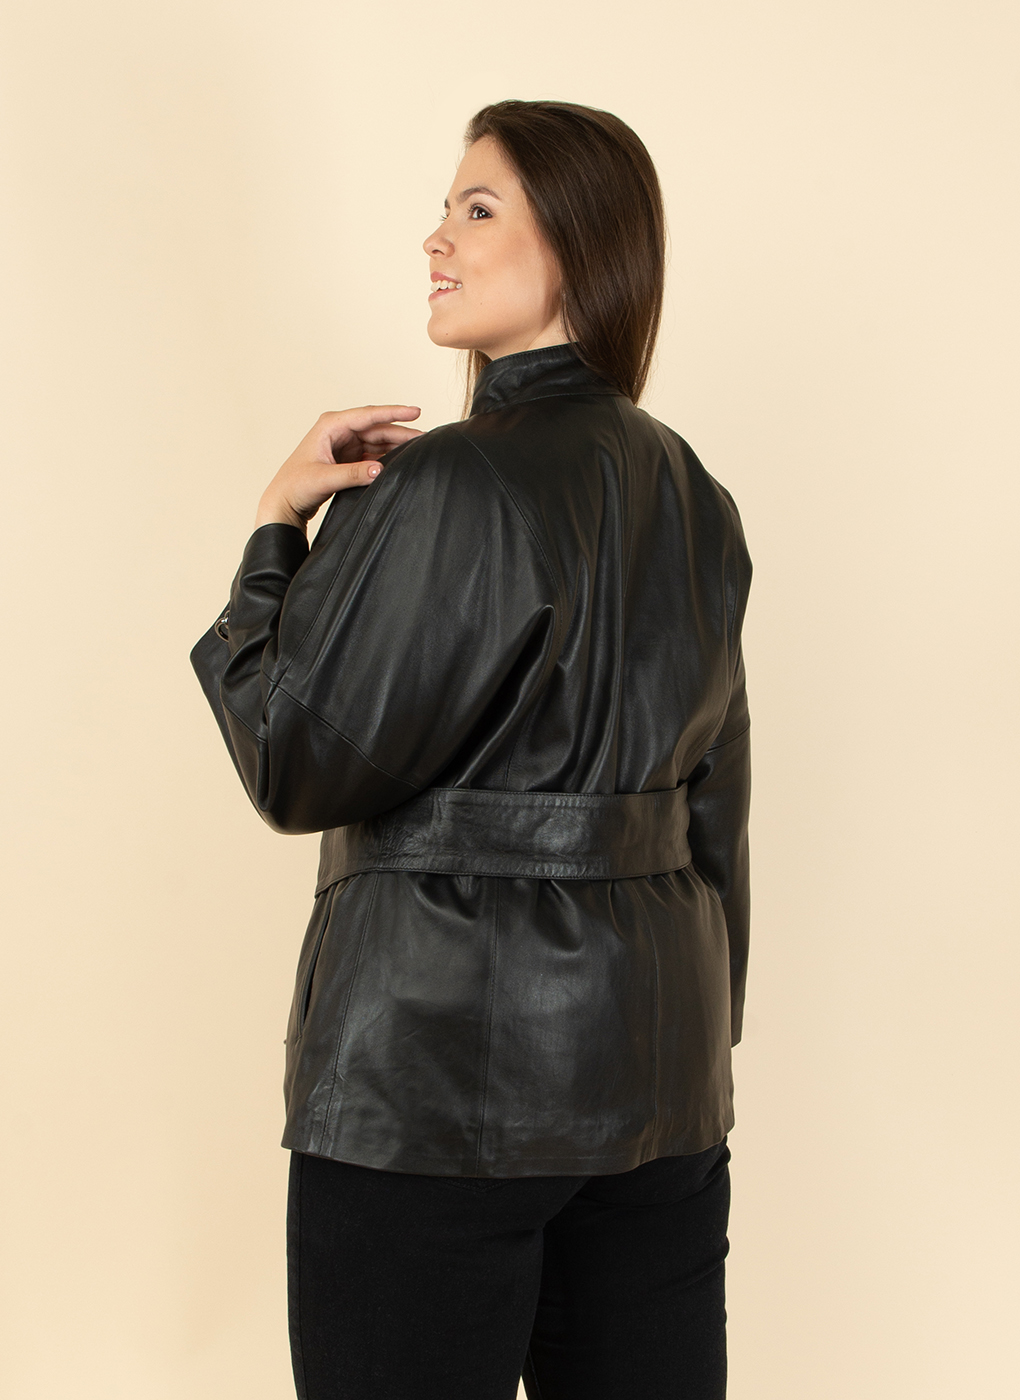 Кожаная куртка женская Каляев 1598656 черная 54 RU